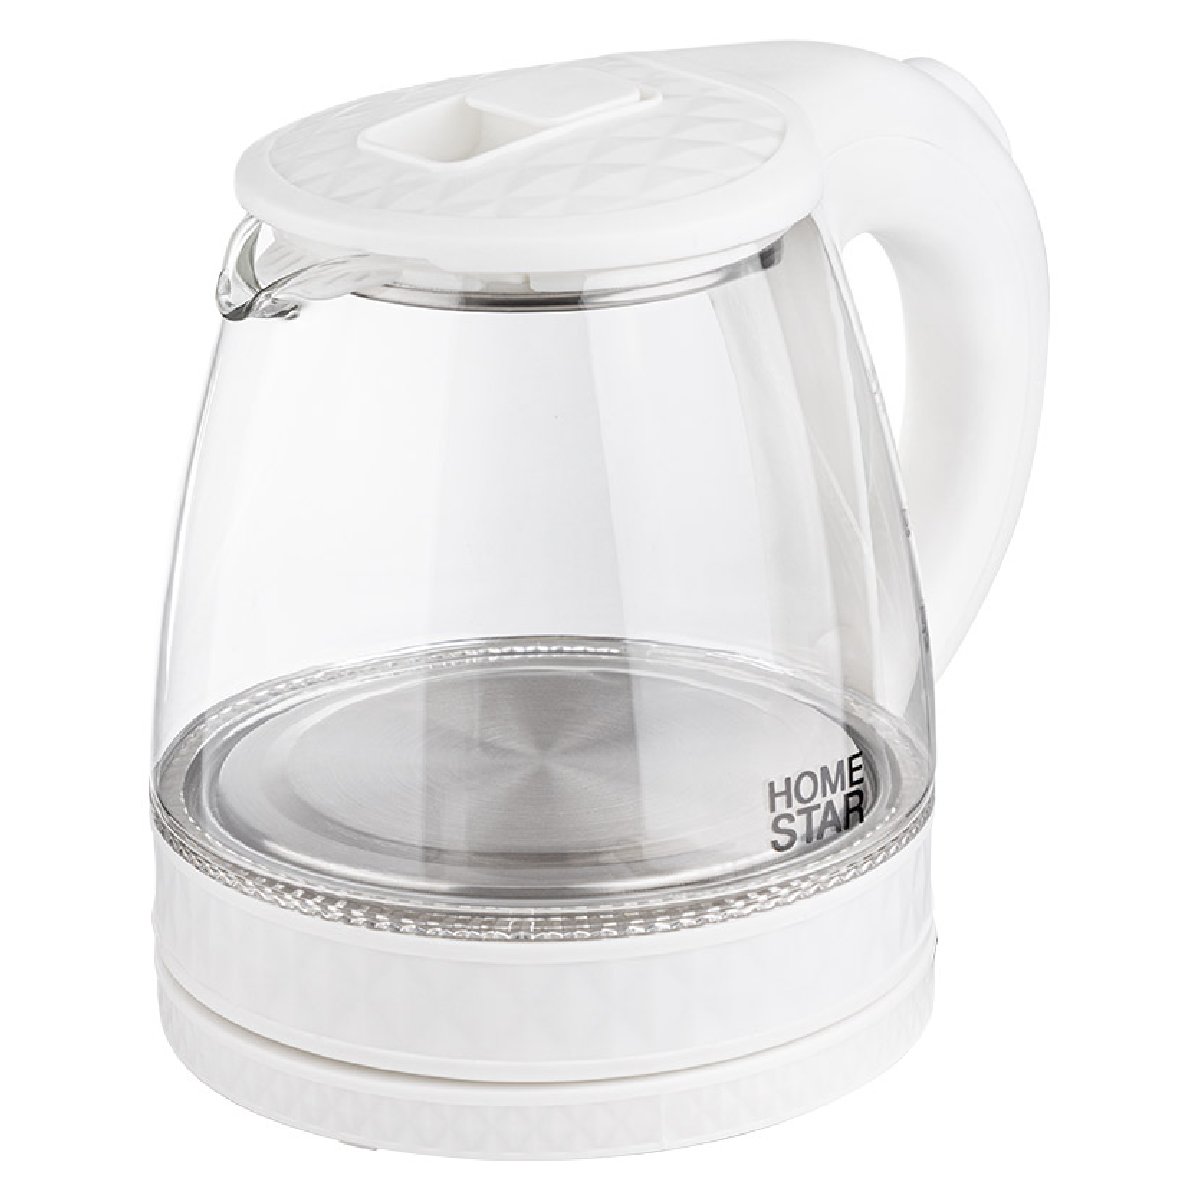 Чайник Homestar HS-1053 (1,2 л.) стекло, пластик белый (106464)